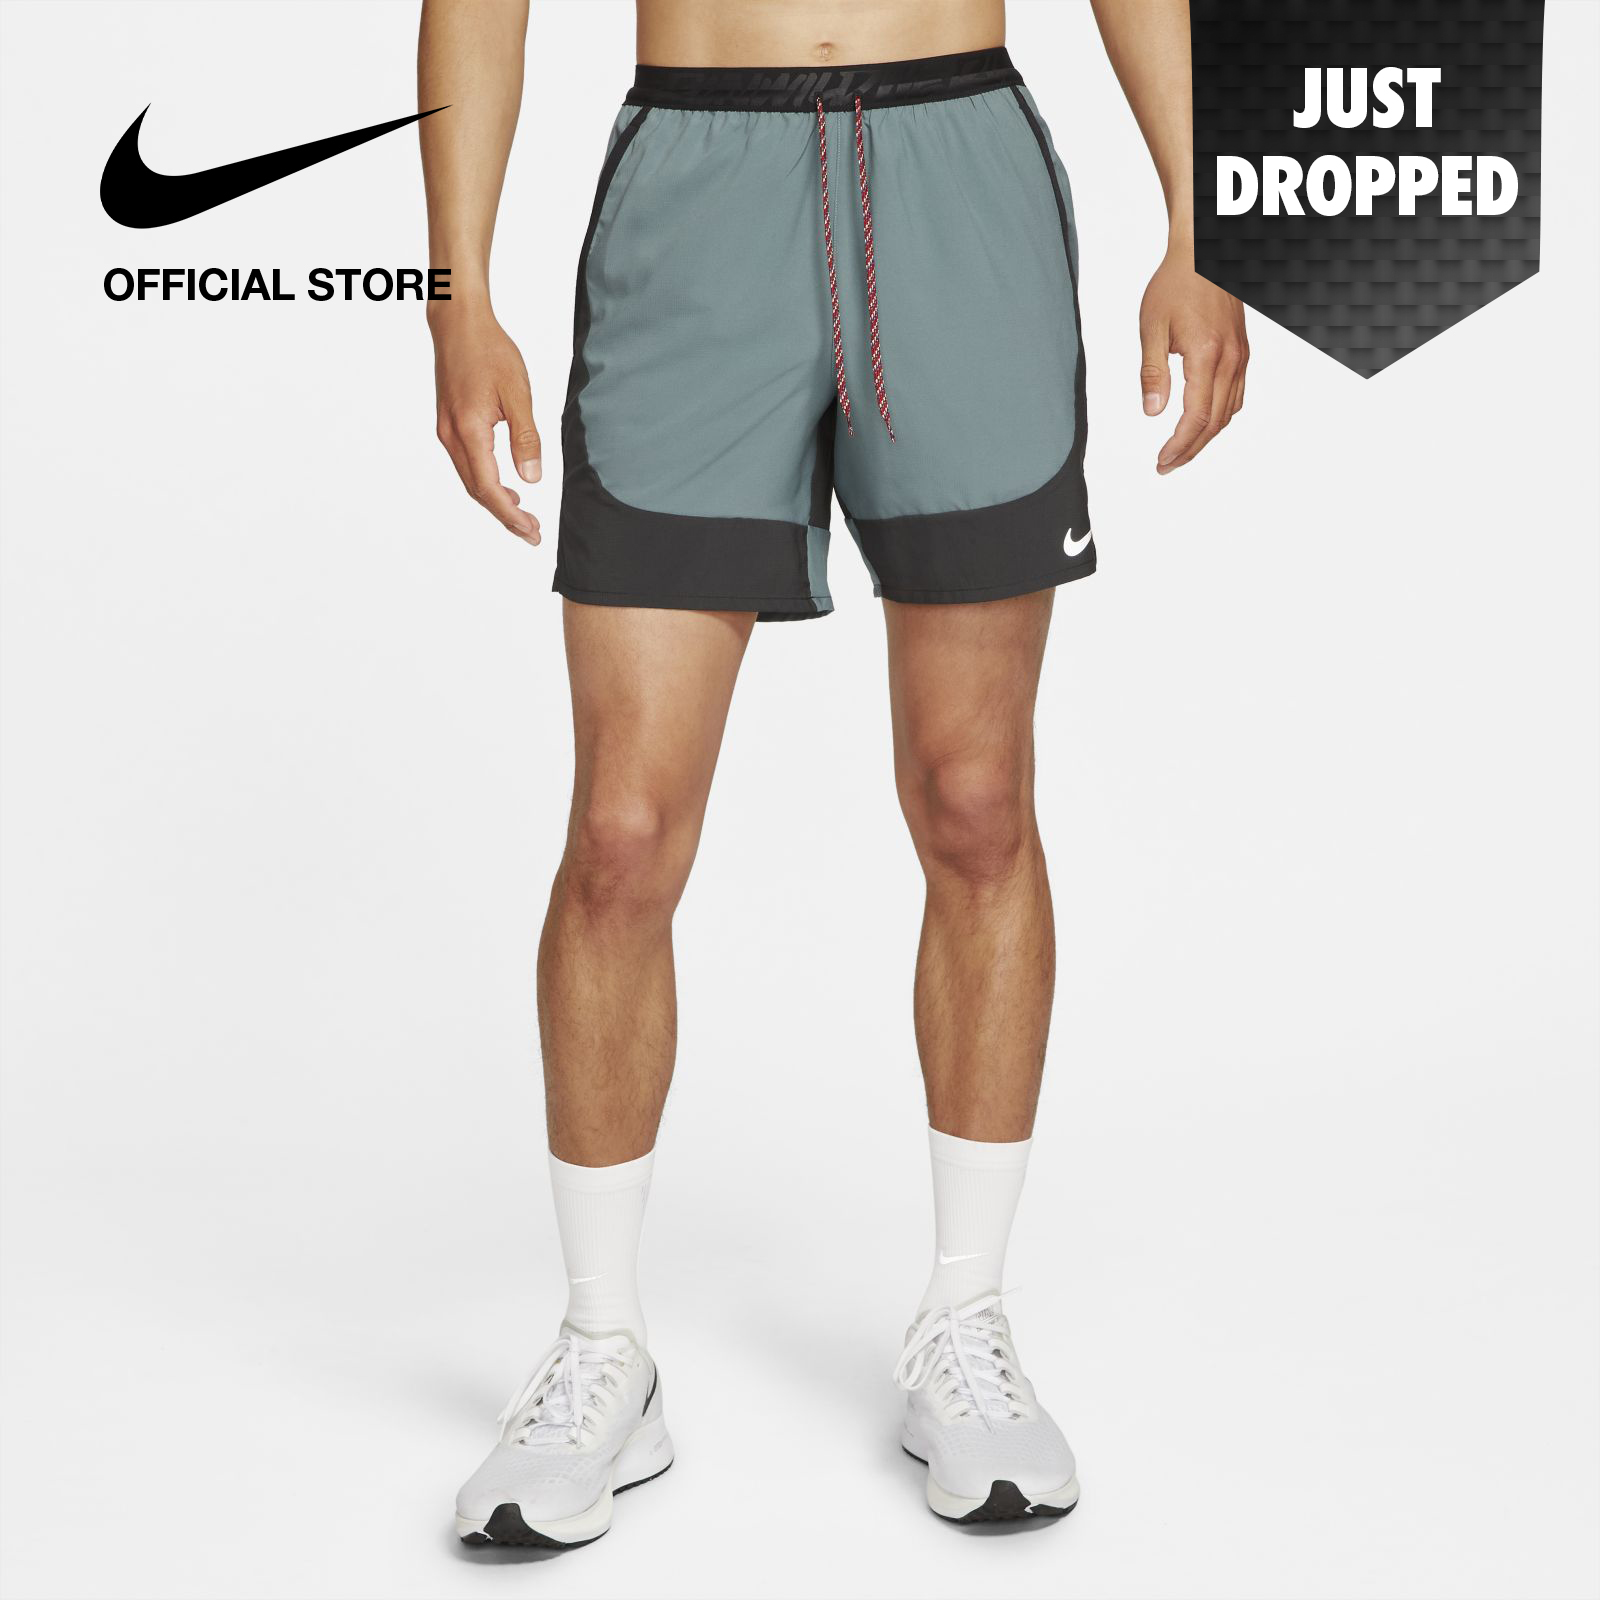 Nike Men's Flex Stride Wild Run Unlined Running Shorts - Hasta ไนกี้ กางเกงขาสั้นวิ่งผู้ชาย เฟล็ก สตรายด์ ไวลด์ รัน อันไลน์ - สีฮัสต้า